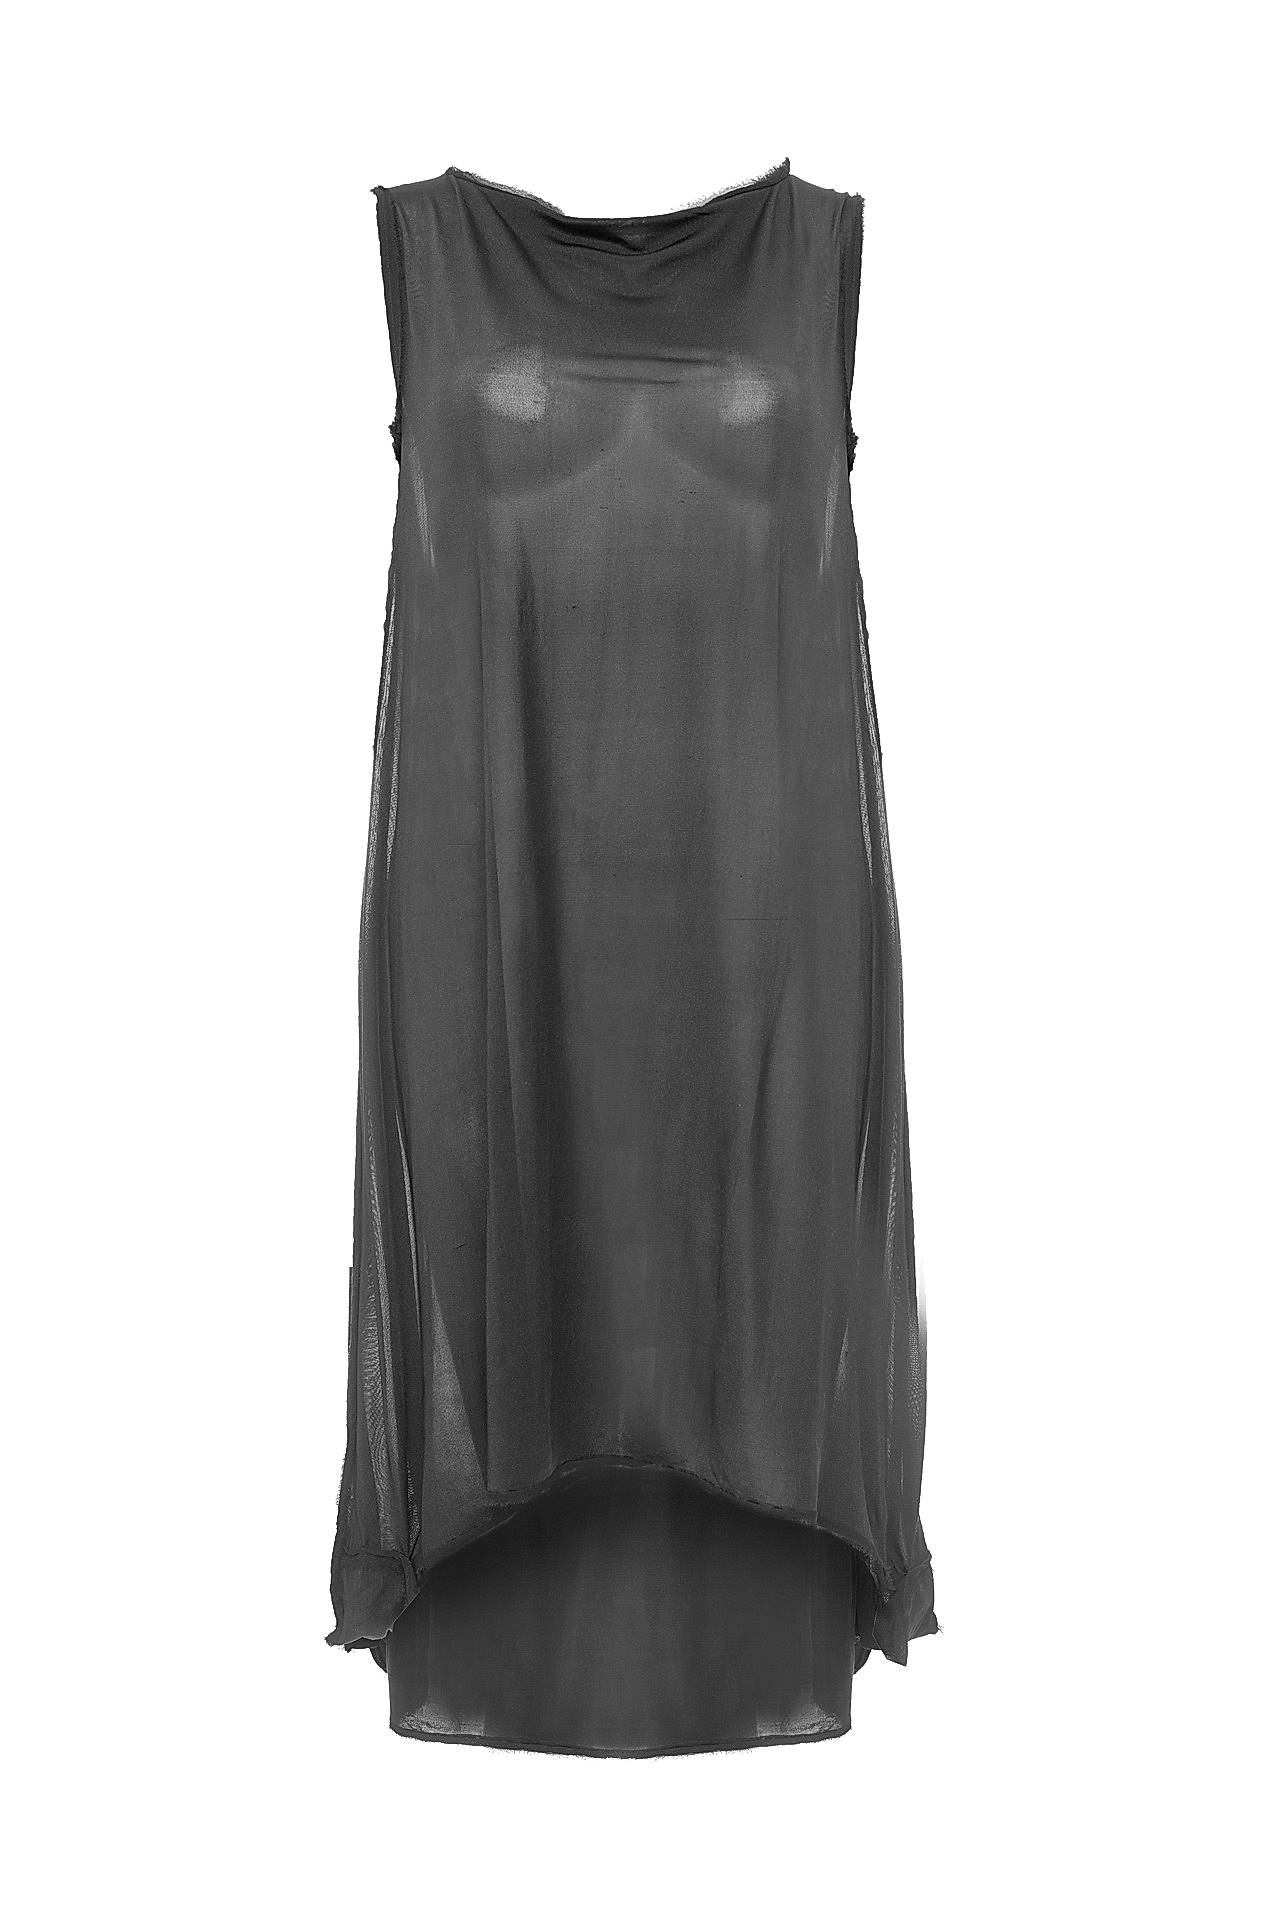 Одежда женская Платье LIVIANA CONTI (F1E602/11.1). Купить за 9850 руб.